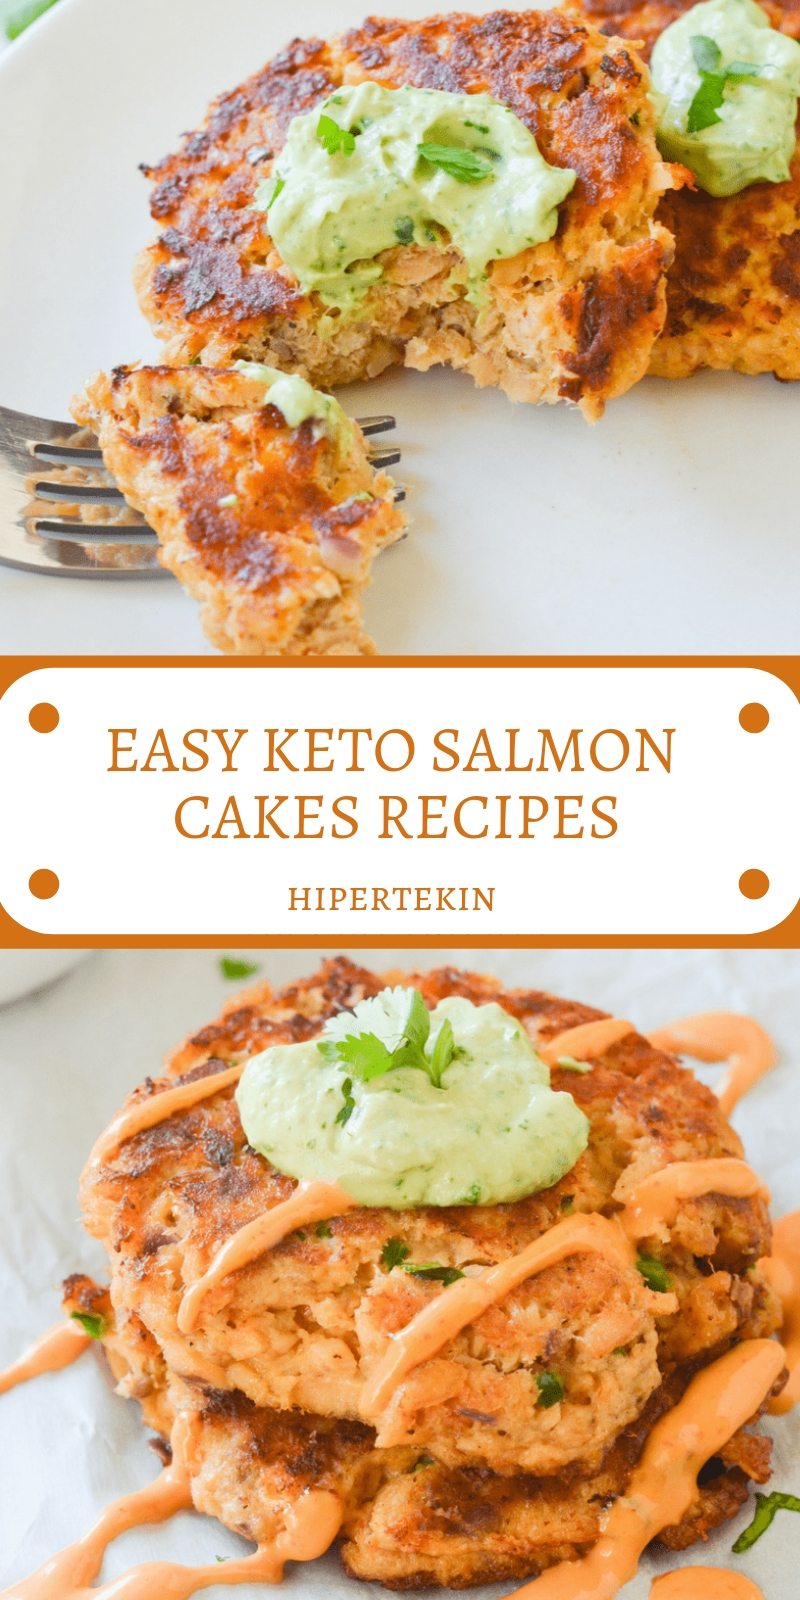 EASY KETO SALMON CAKES RECIPES